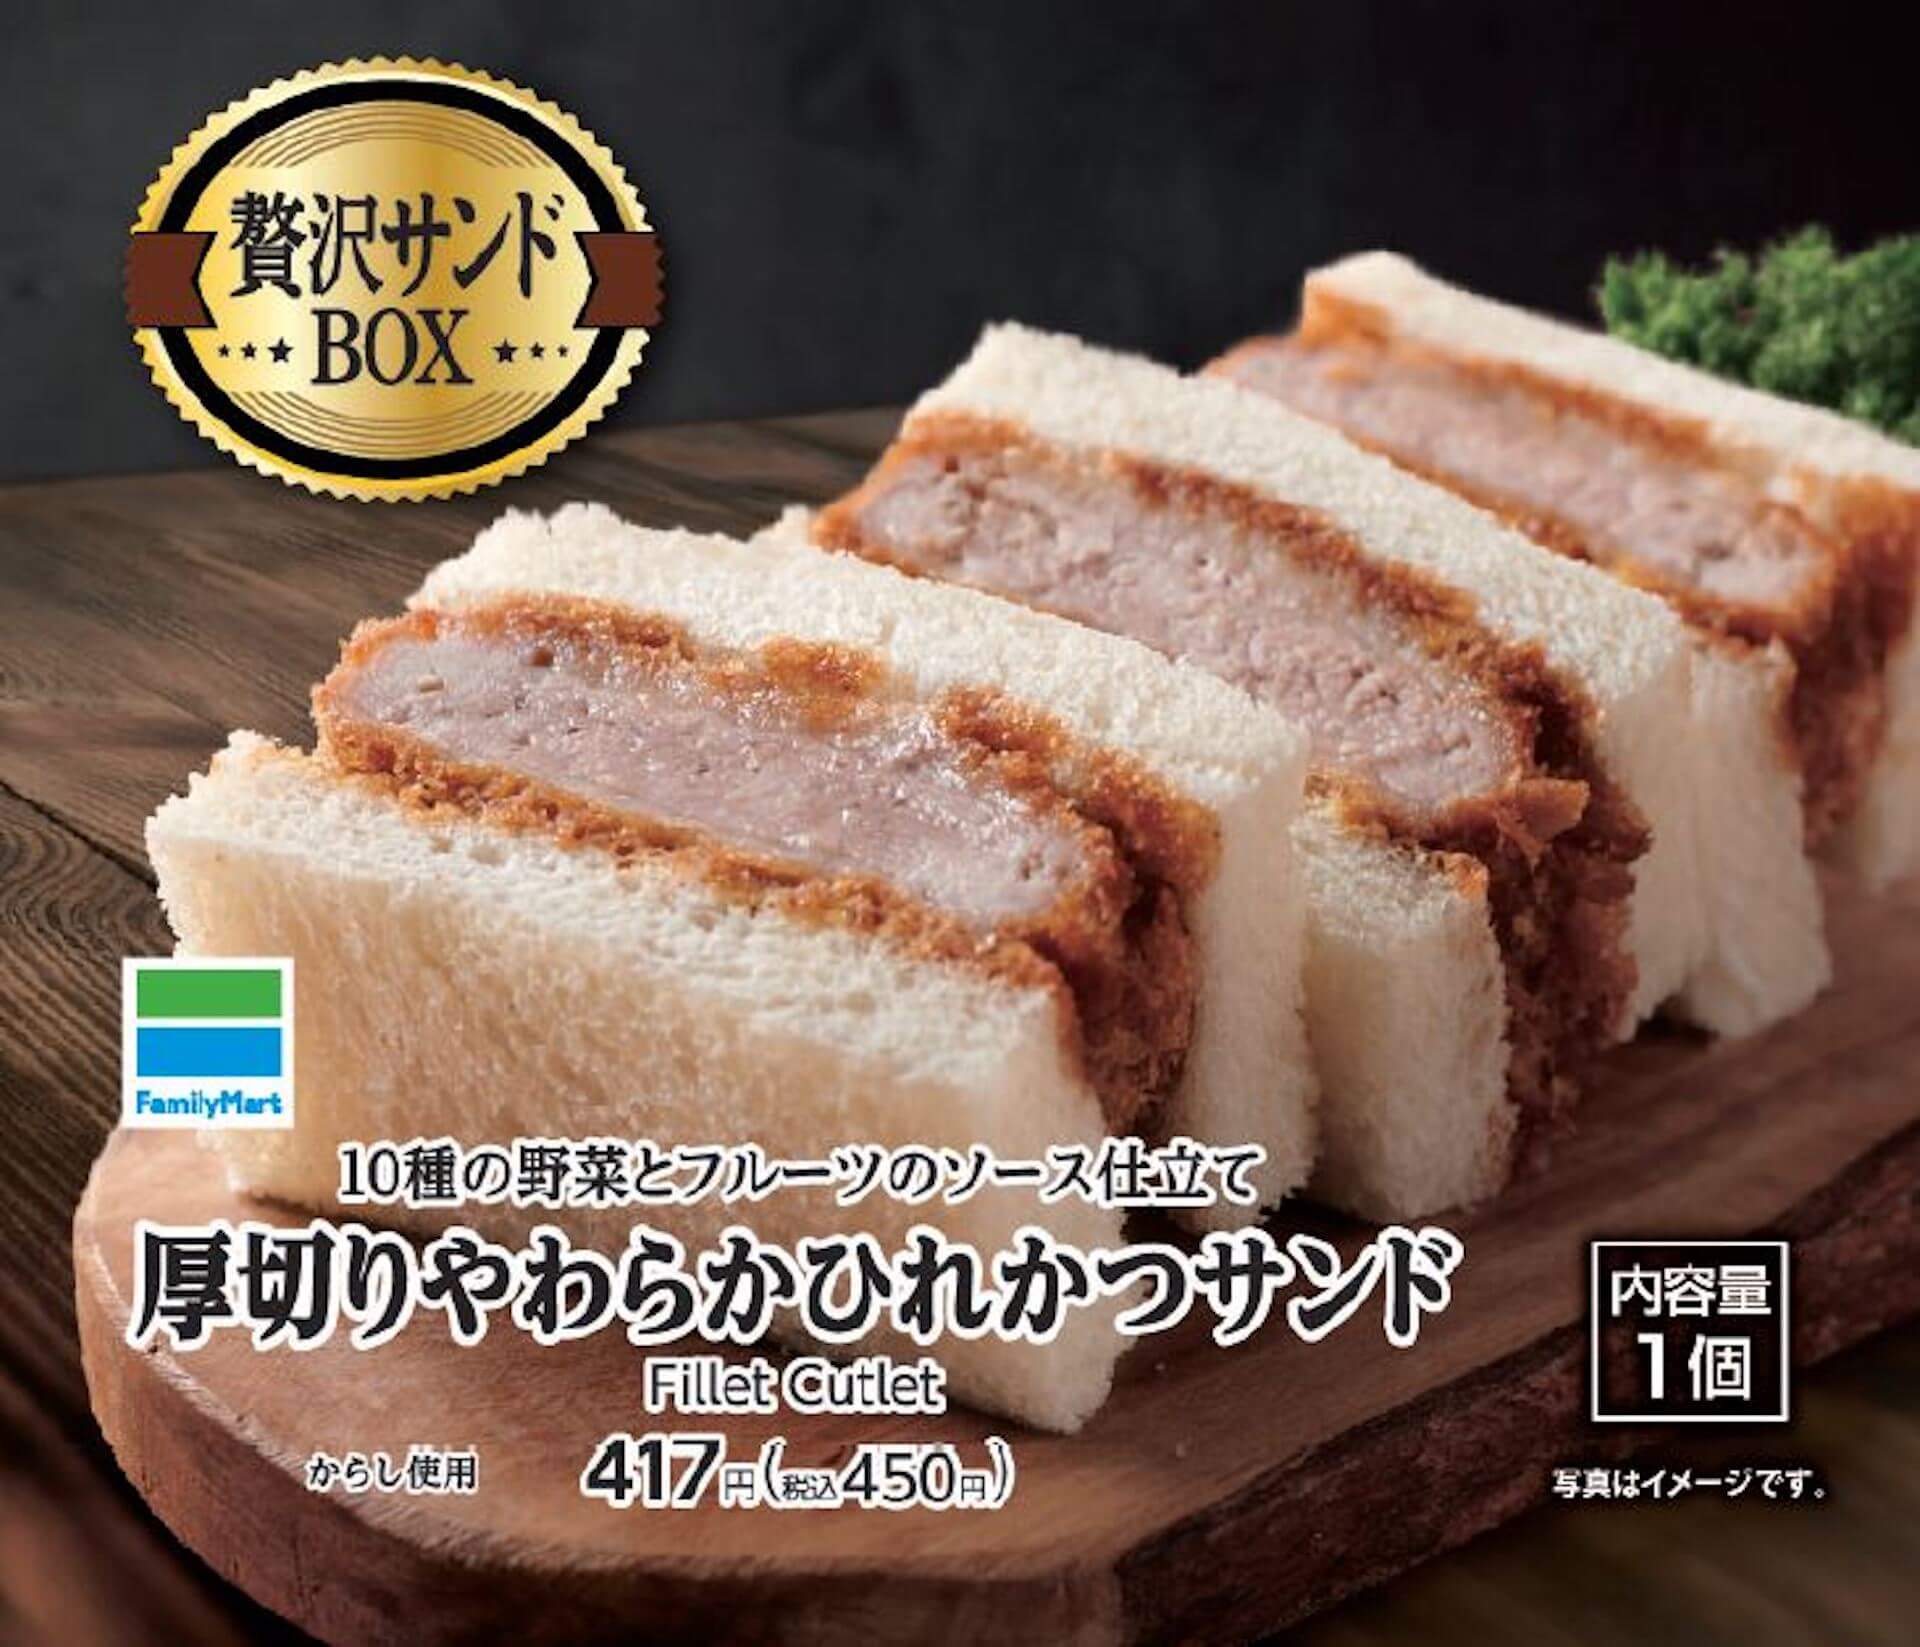 ファミリーマートのBOXサンドイッチにプレミアムライン「贅沢サンドBOX」が登場！ひれかつサンド＆海老カツサンドが発売 gourmet210629_familymart_sandwich_1